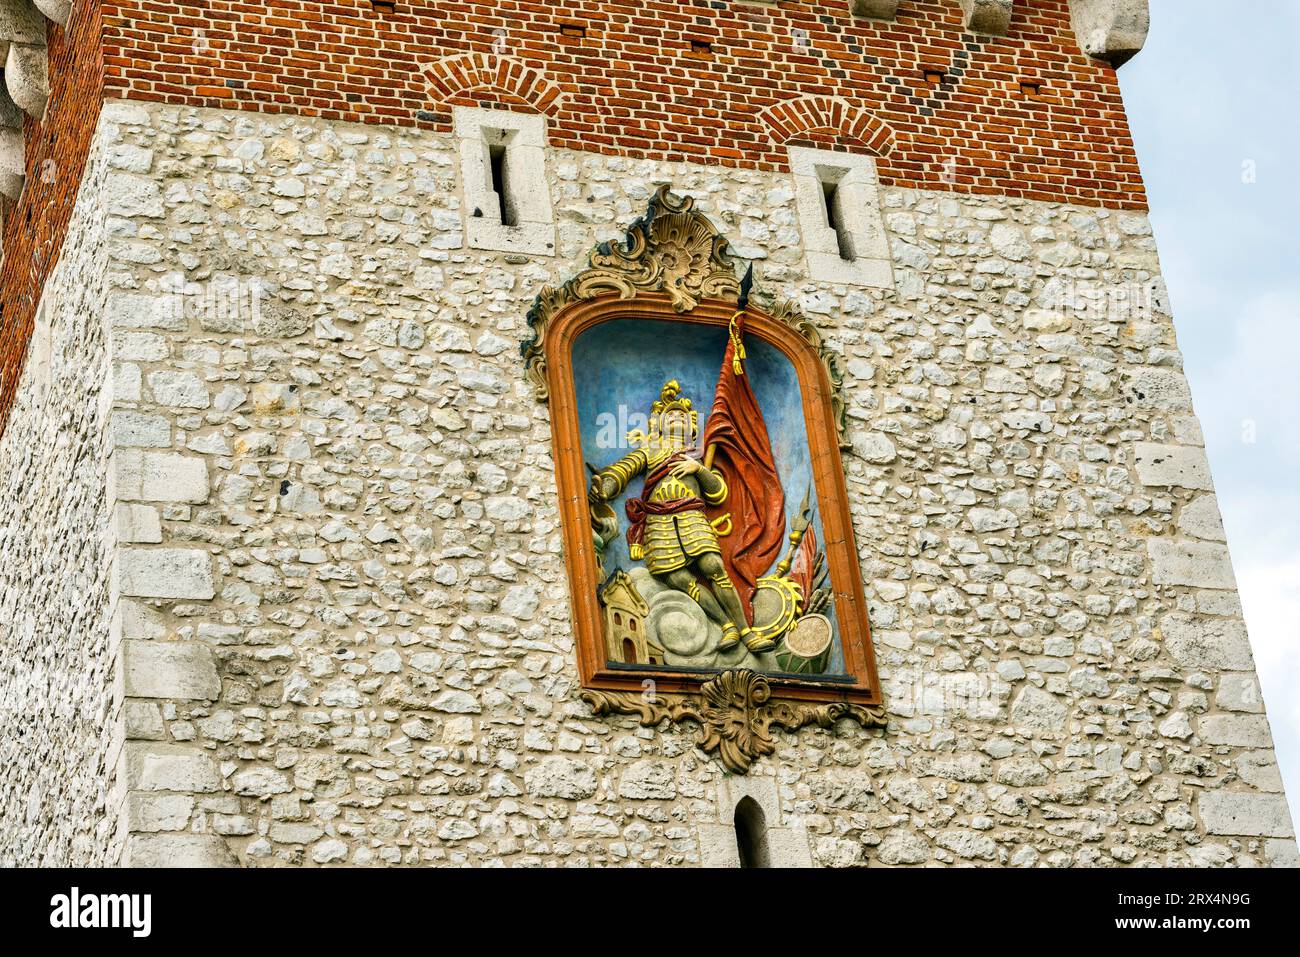 Barockes Relief mit der Darstellung von St. Florian auf dem Florian Tower. Dieser heilige ist der Schutzpatron von Krakau und Beschützer der Stadt vor Bränden. Stockfoto